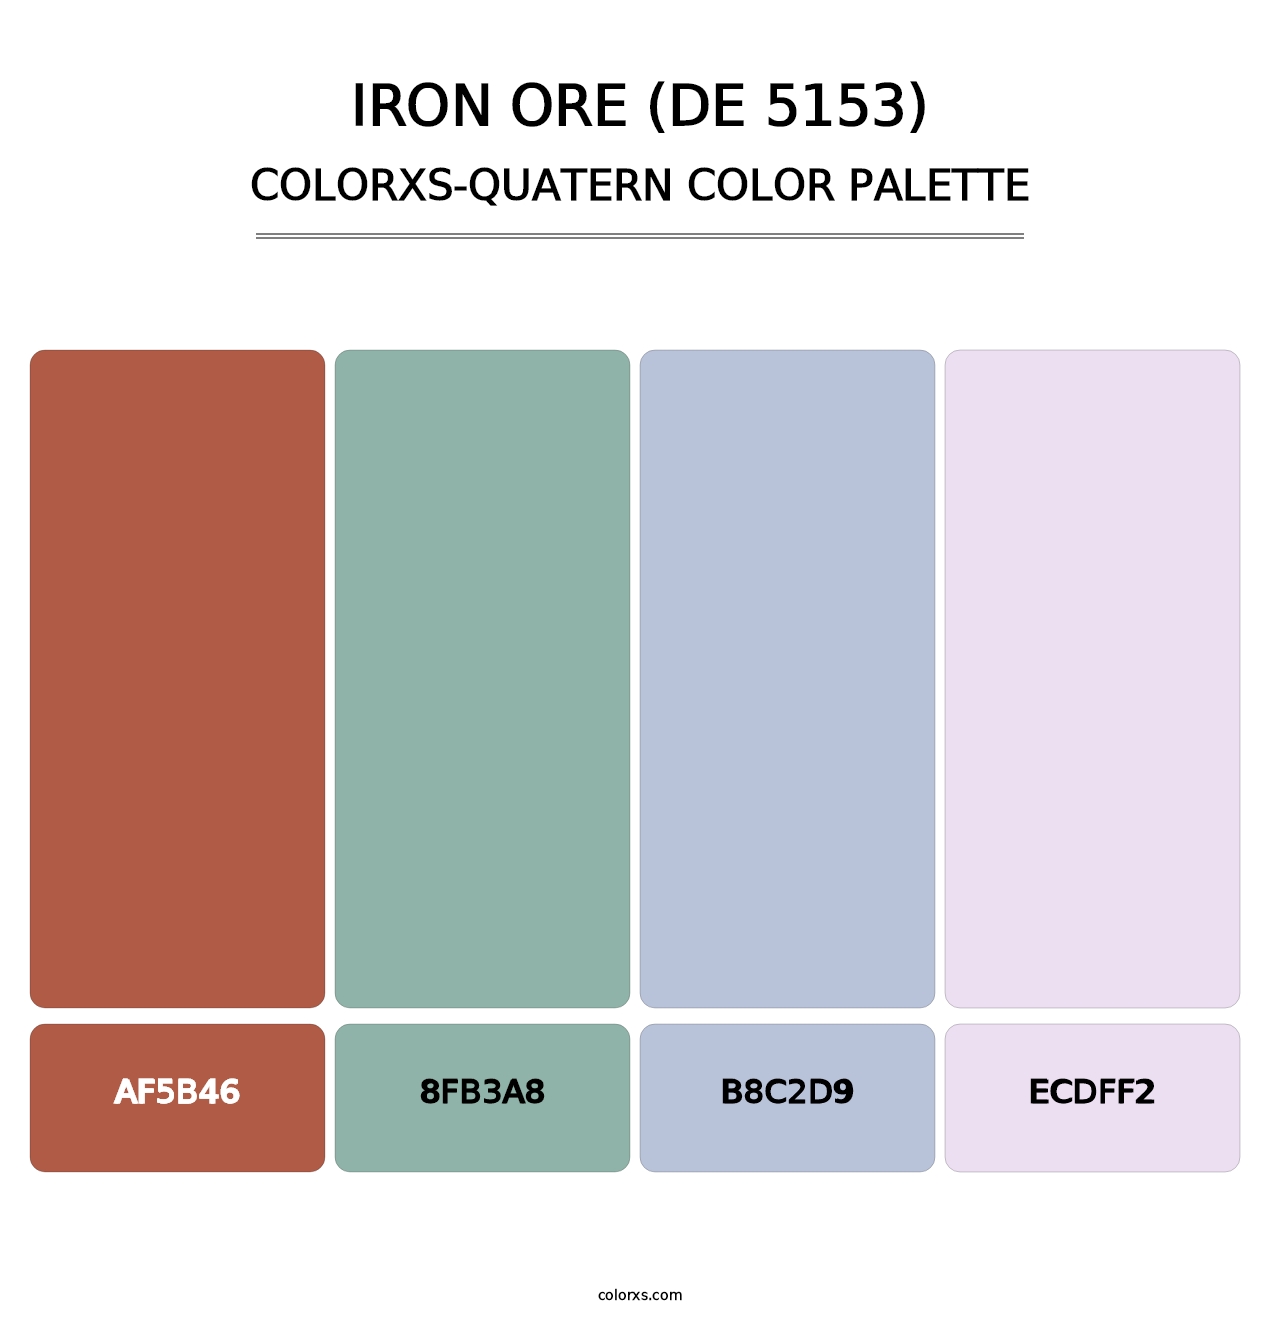 Iron Ore (DE 5153) - Colorxs Quatern Palette